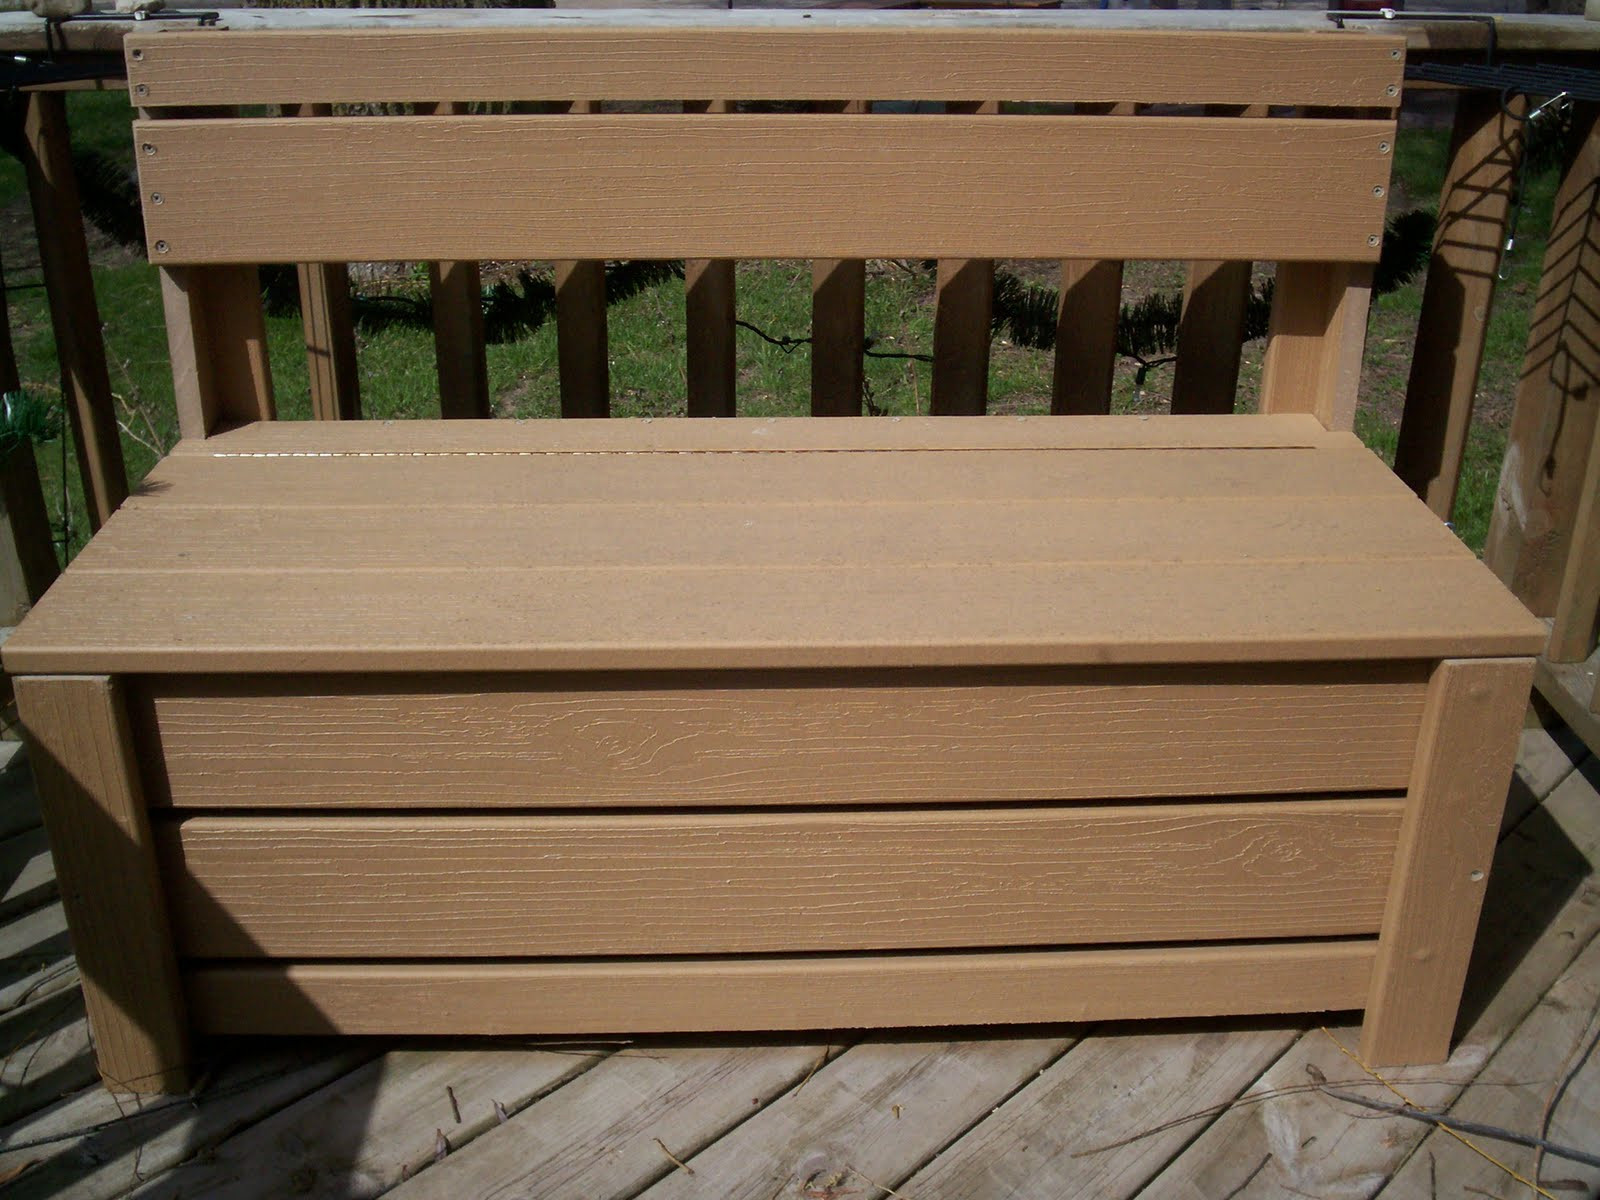 Storage Bench For Deck
 TRU TALES FEATS DECK STORAGE BENCH